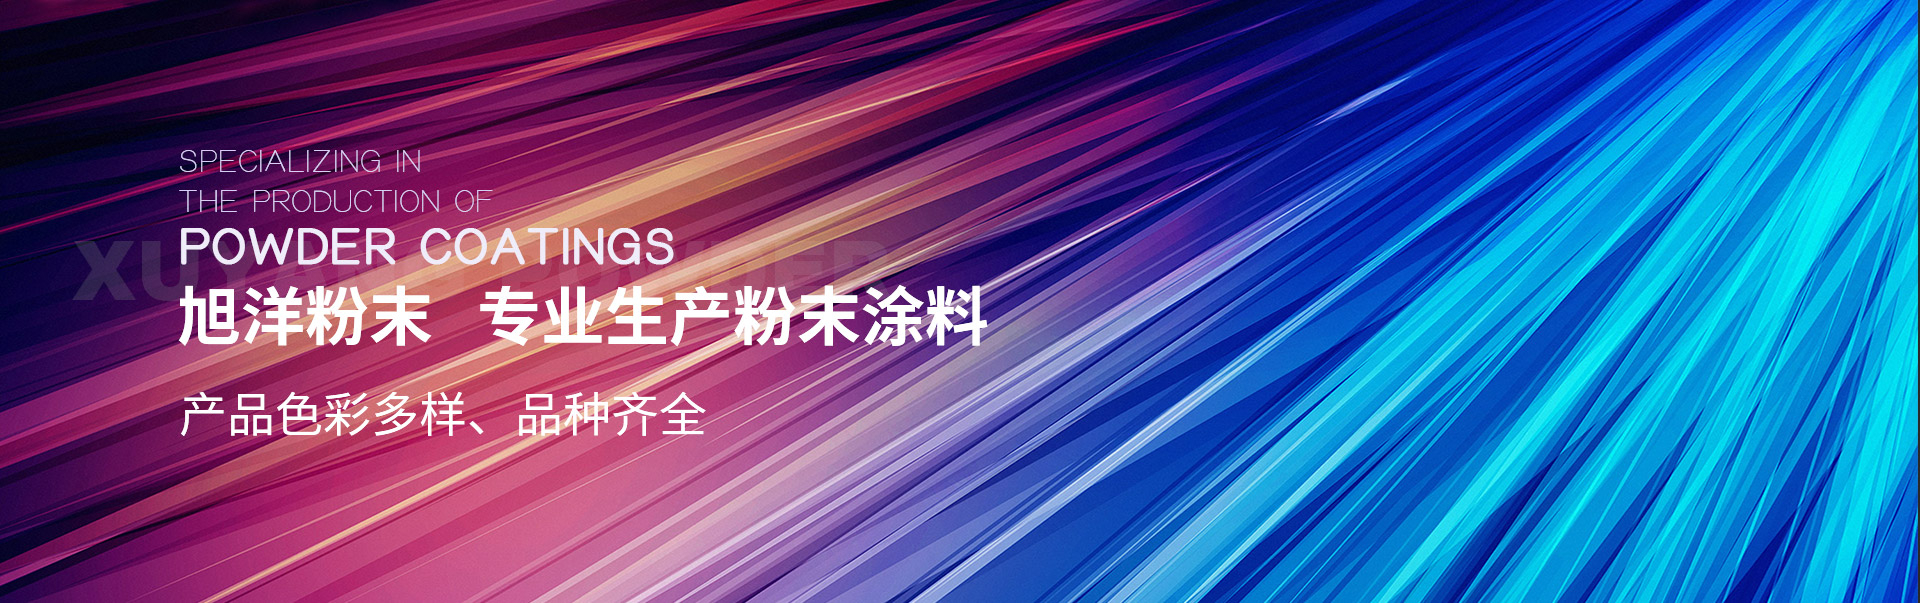 PC内页-中文版案例展示banner